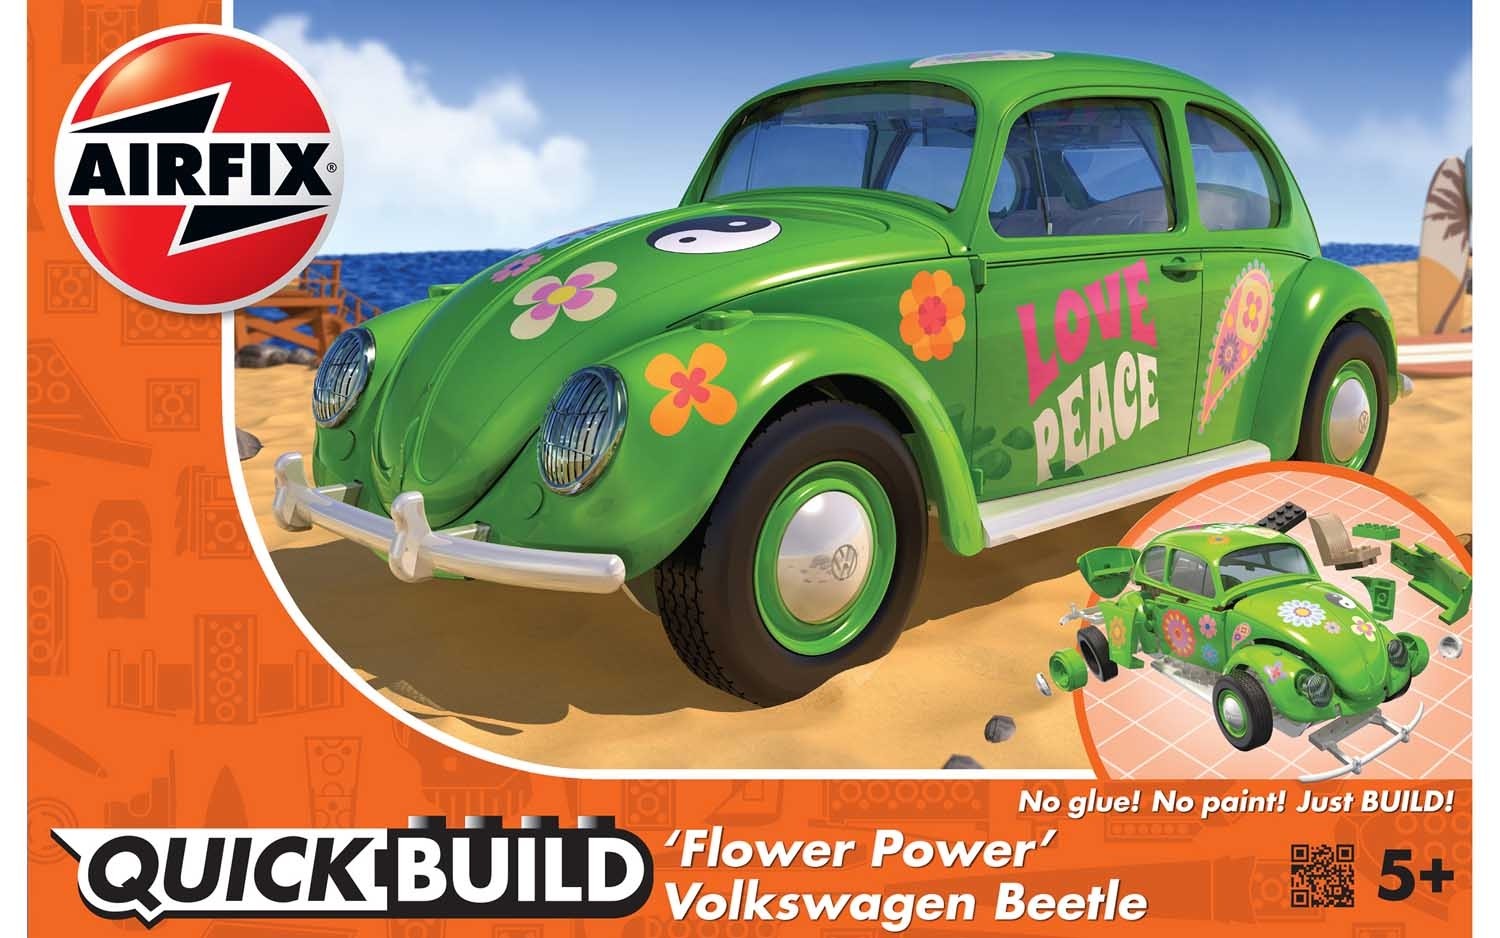 Quick Build VW Beetle “Flower Power” 